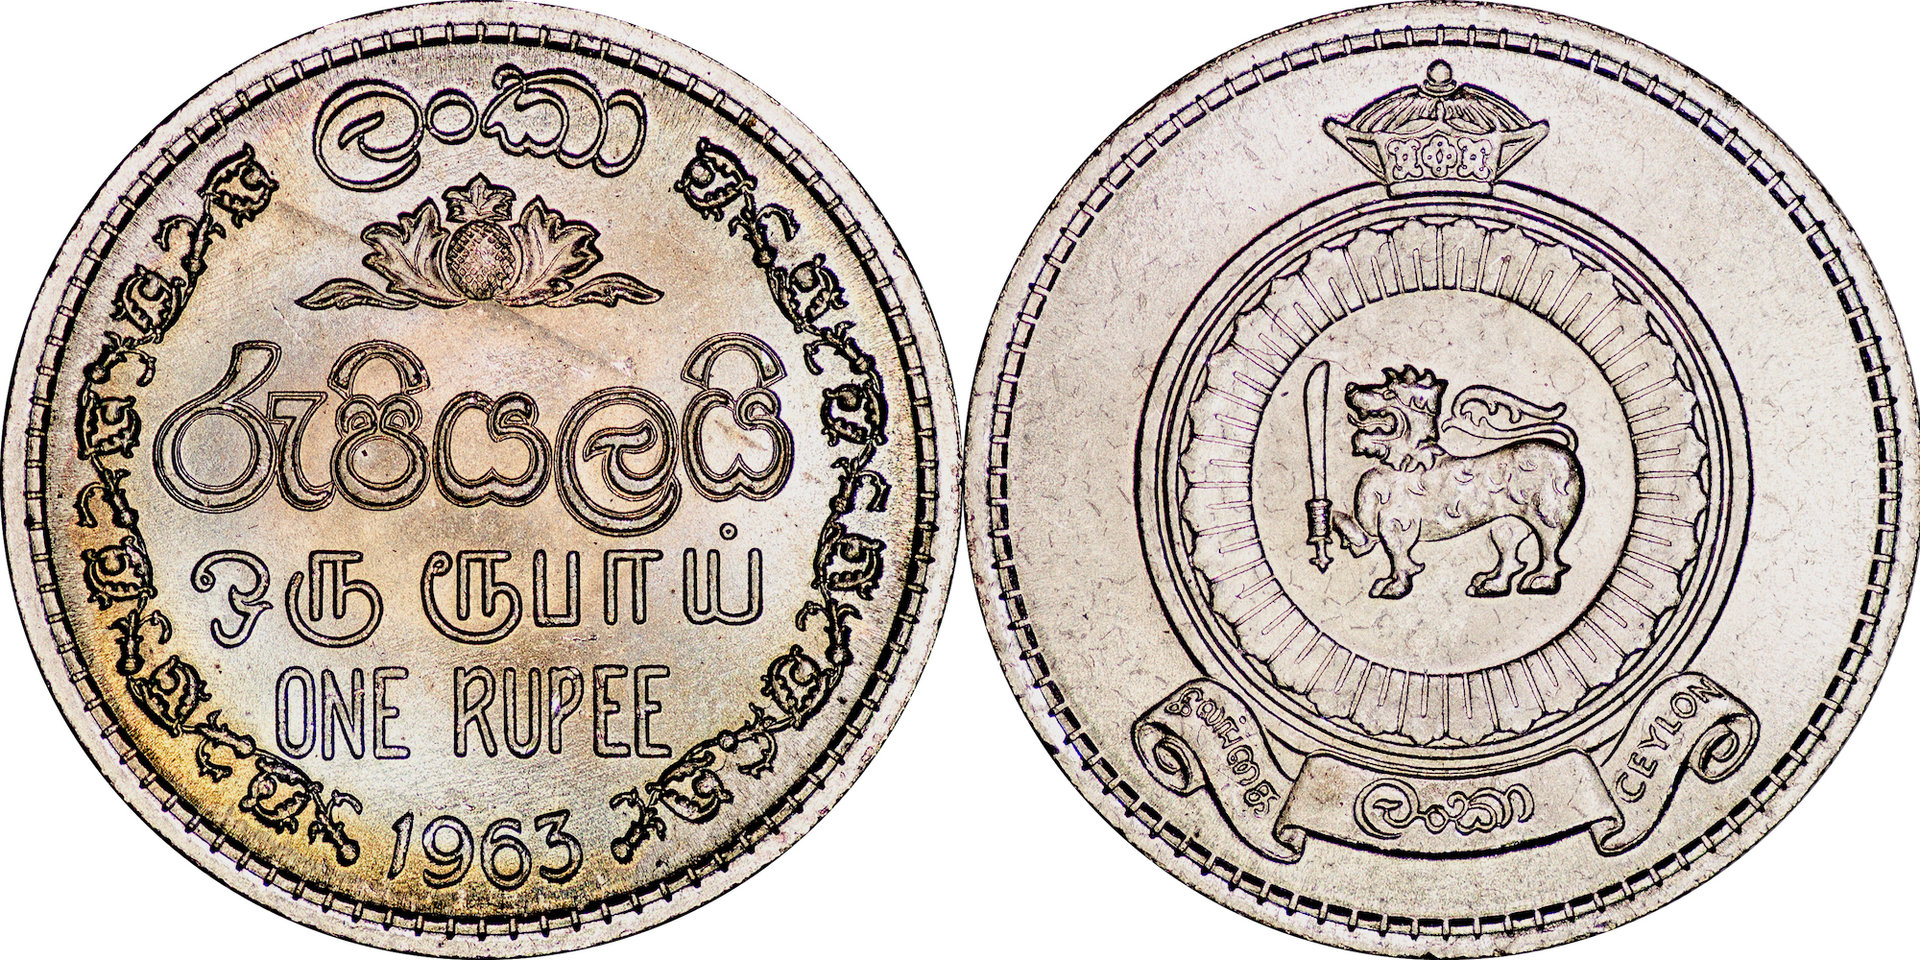 Ceylon - 1963 1 Rupee.jpg